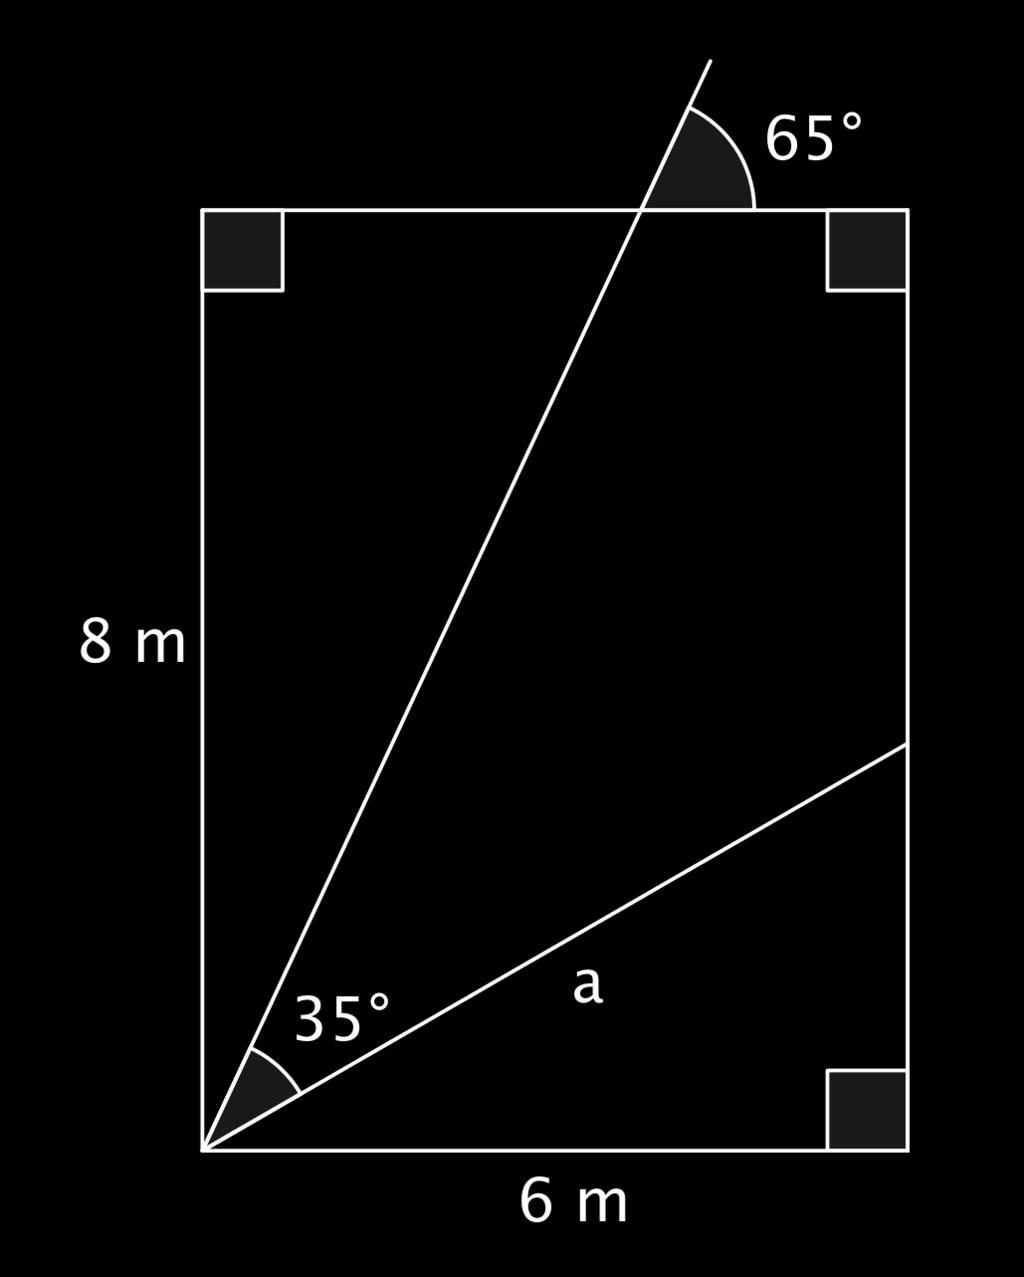 (a) a= 6 m sin 25 (b) a= 6 m cos 30 (c) a=6